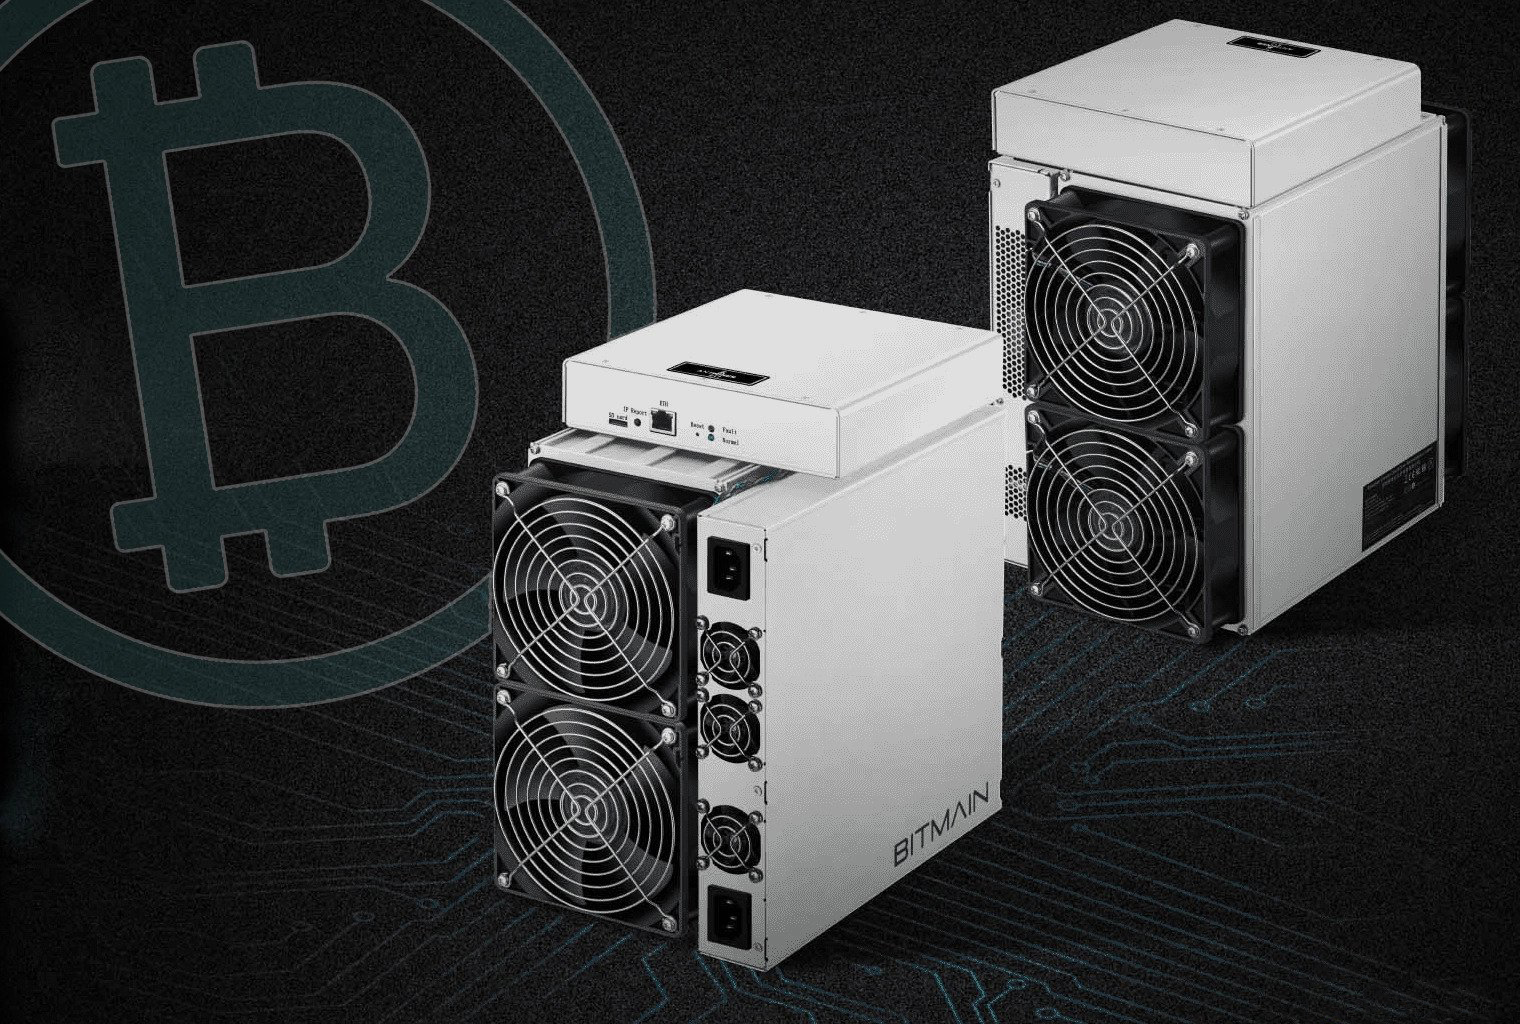 เผยแล้ว เครื่องขุด Bitcoin รุ่น Antminer S17 ตัวใหม่ของ Bitmain  จะมีแรงขุดมากกว่า 50 Th/S - Siam Blockchain